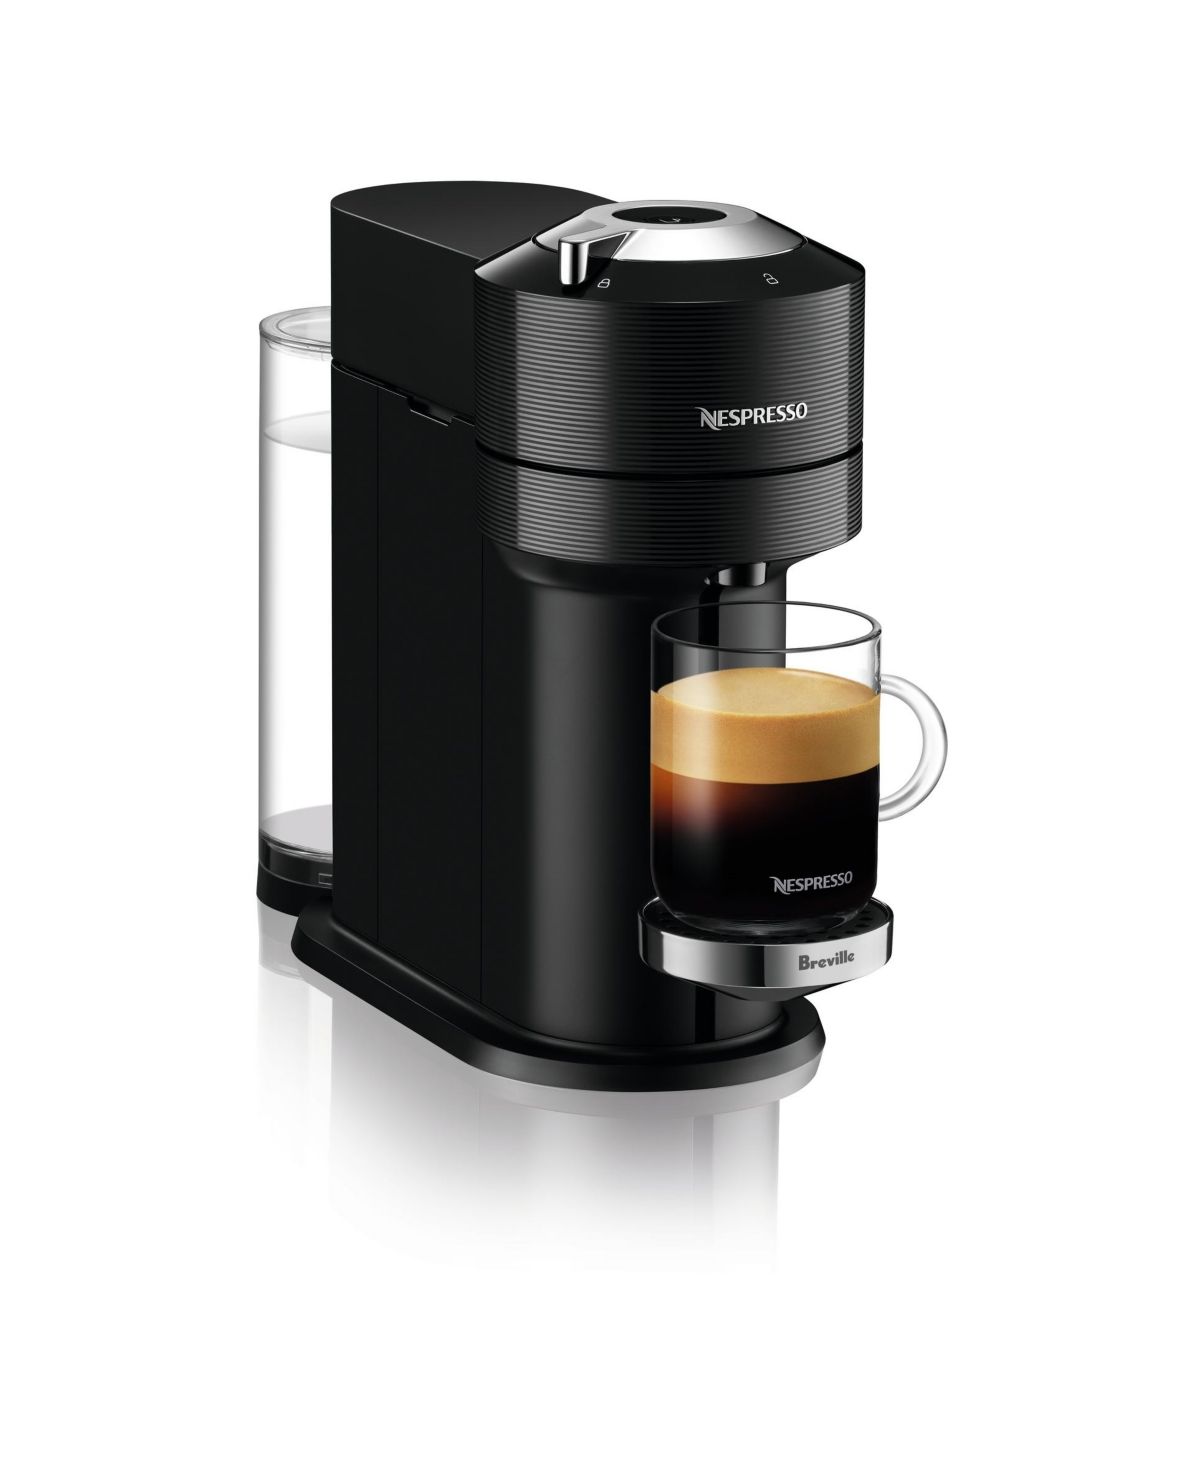 Nespresso Vertuo Next Premium Coffee and Espresso Maker by Breville, Classic Black | Macys (US)